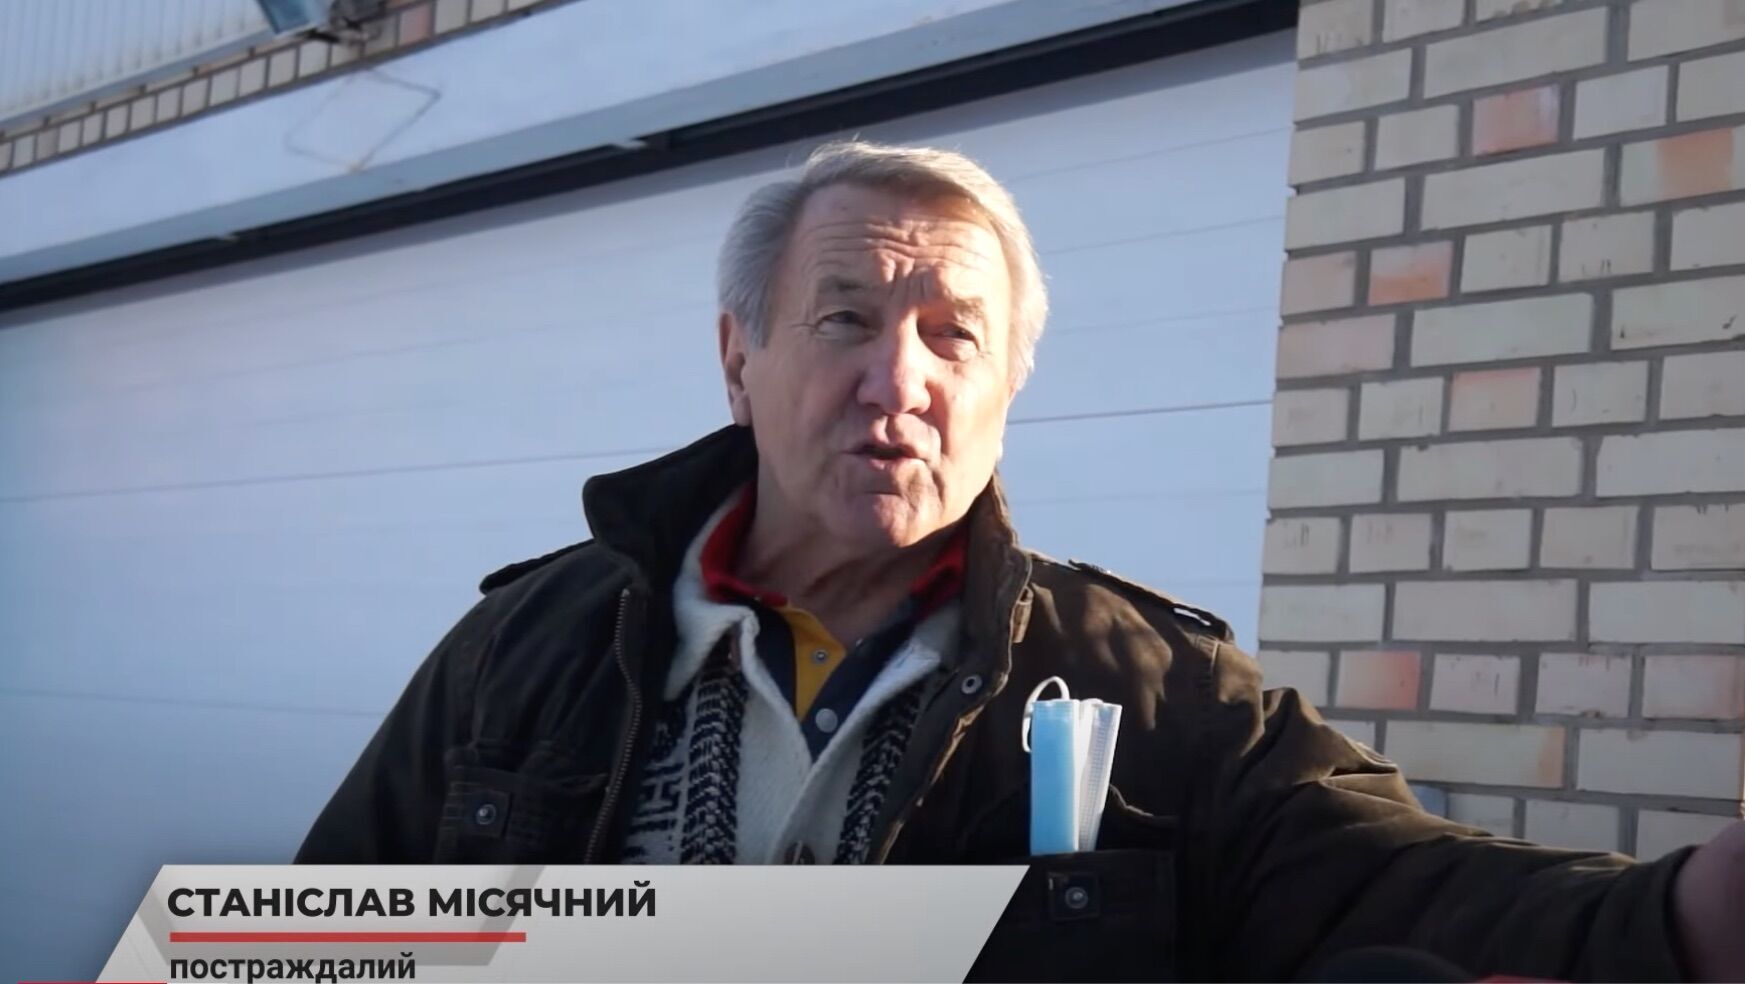 Пенсионер Станислав Месячный рассказал о терроре со стороны соседа